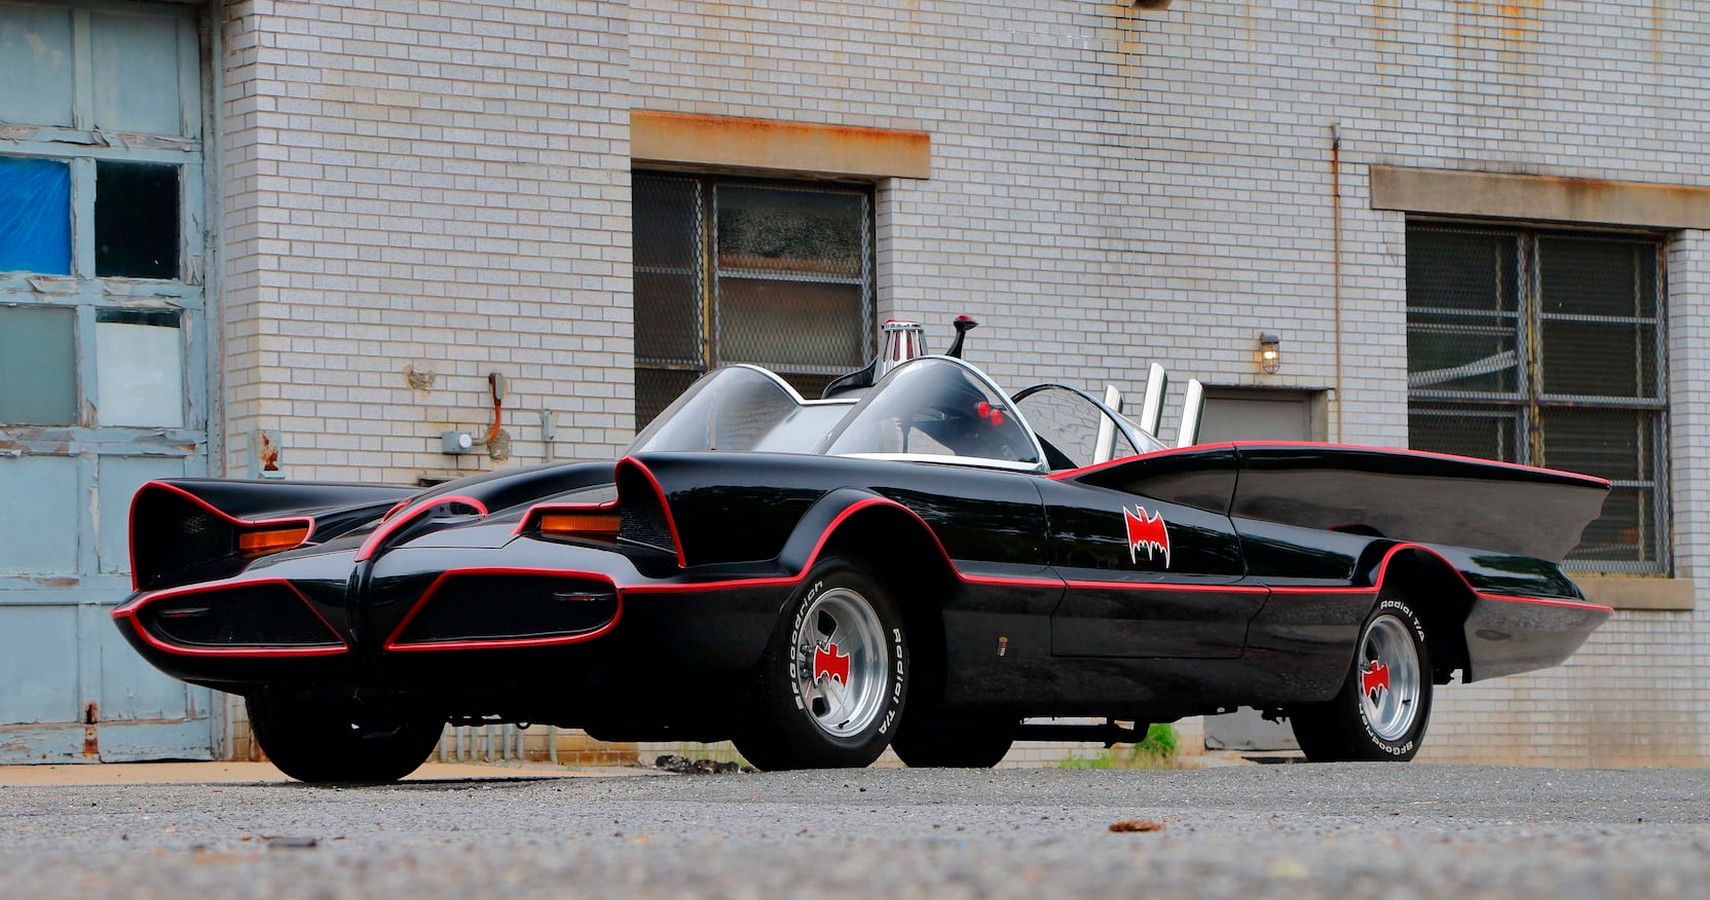 Original 1966 Batmobile From The TV Series